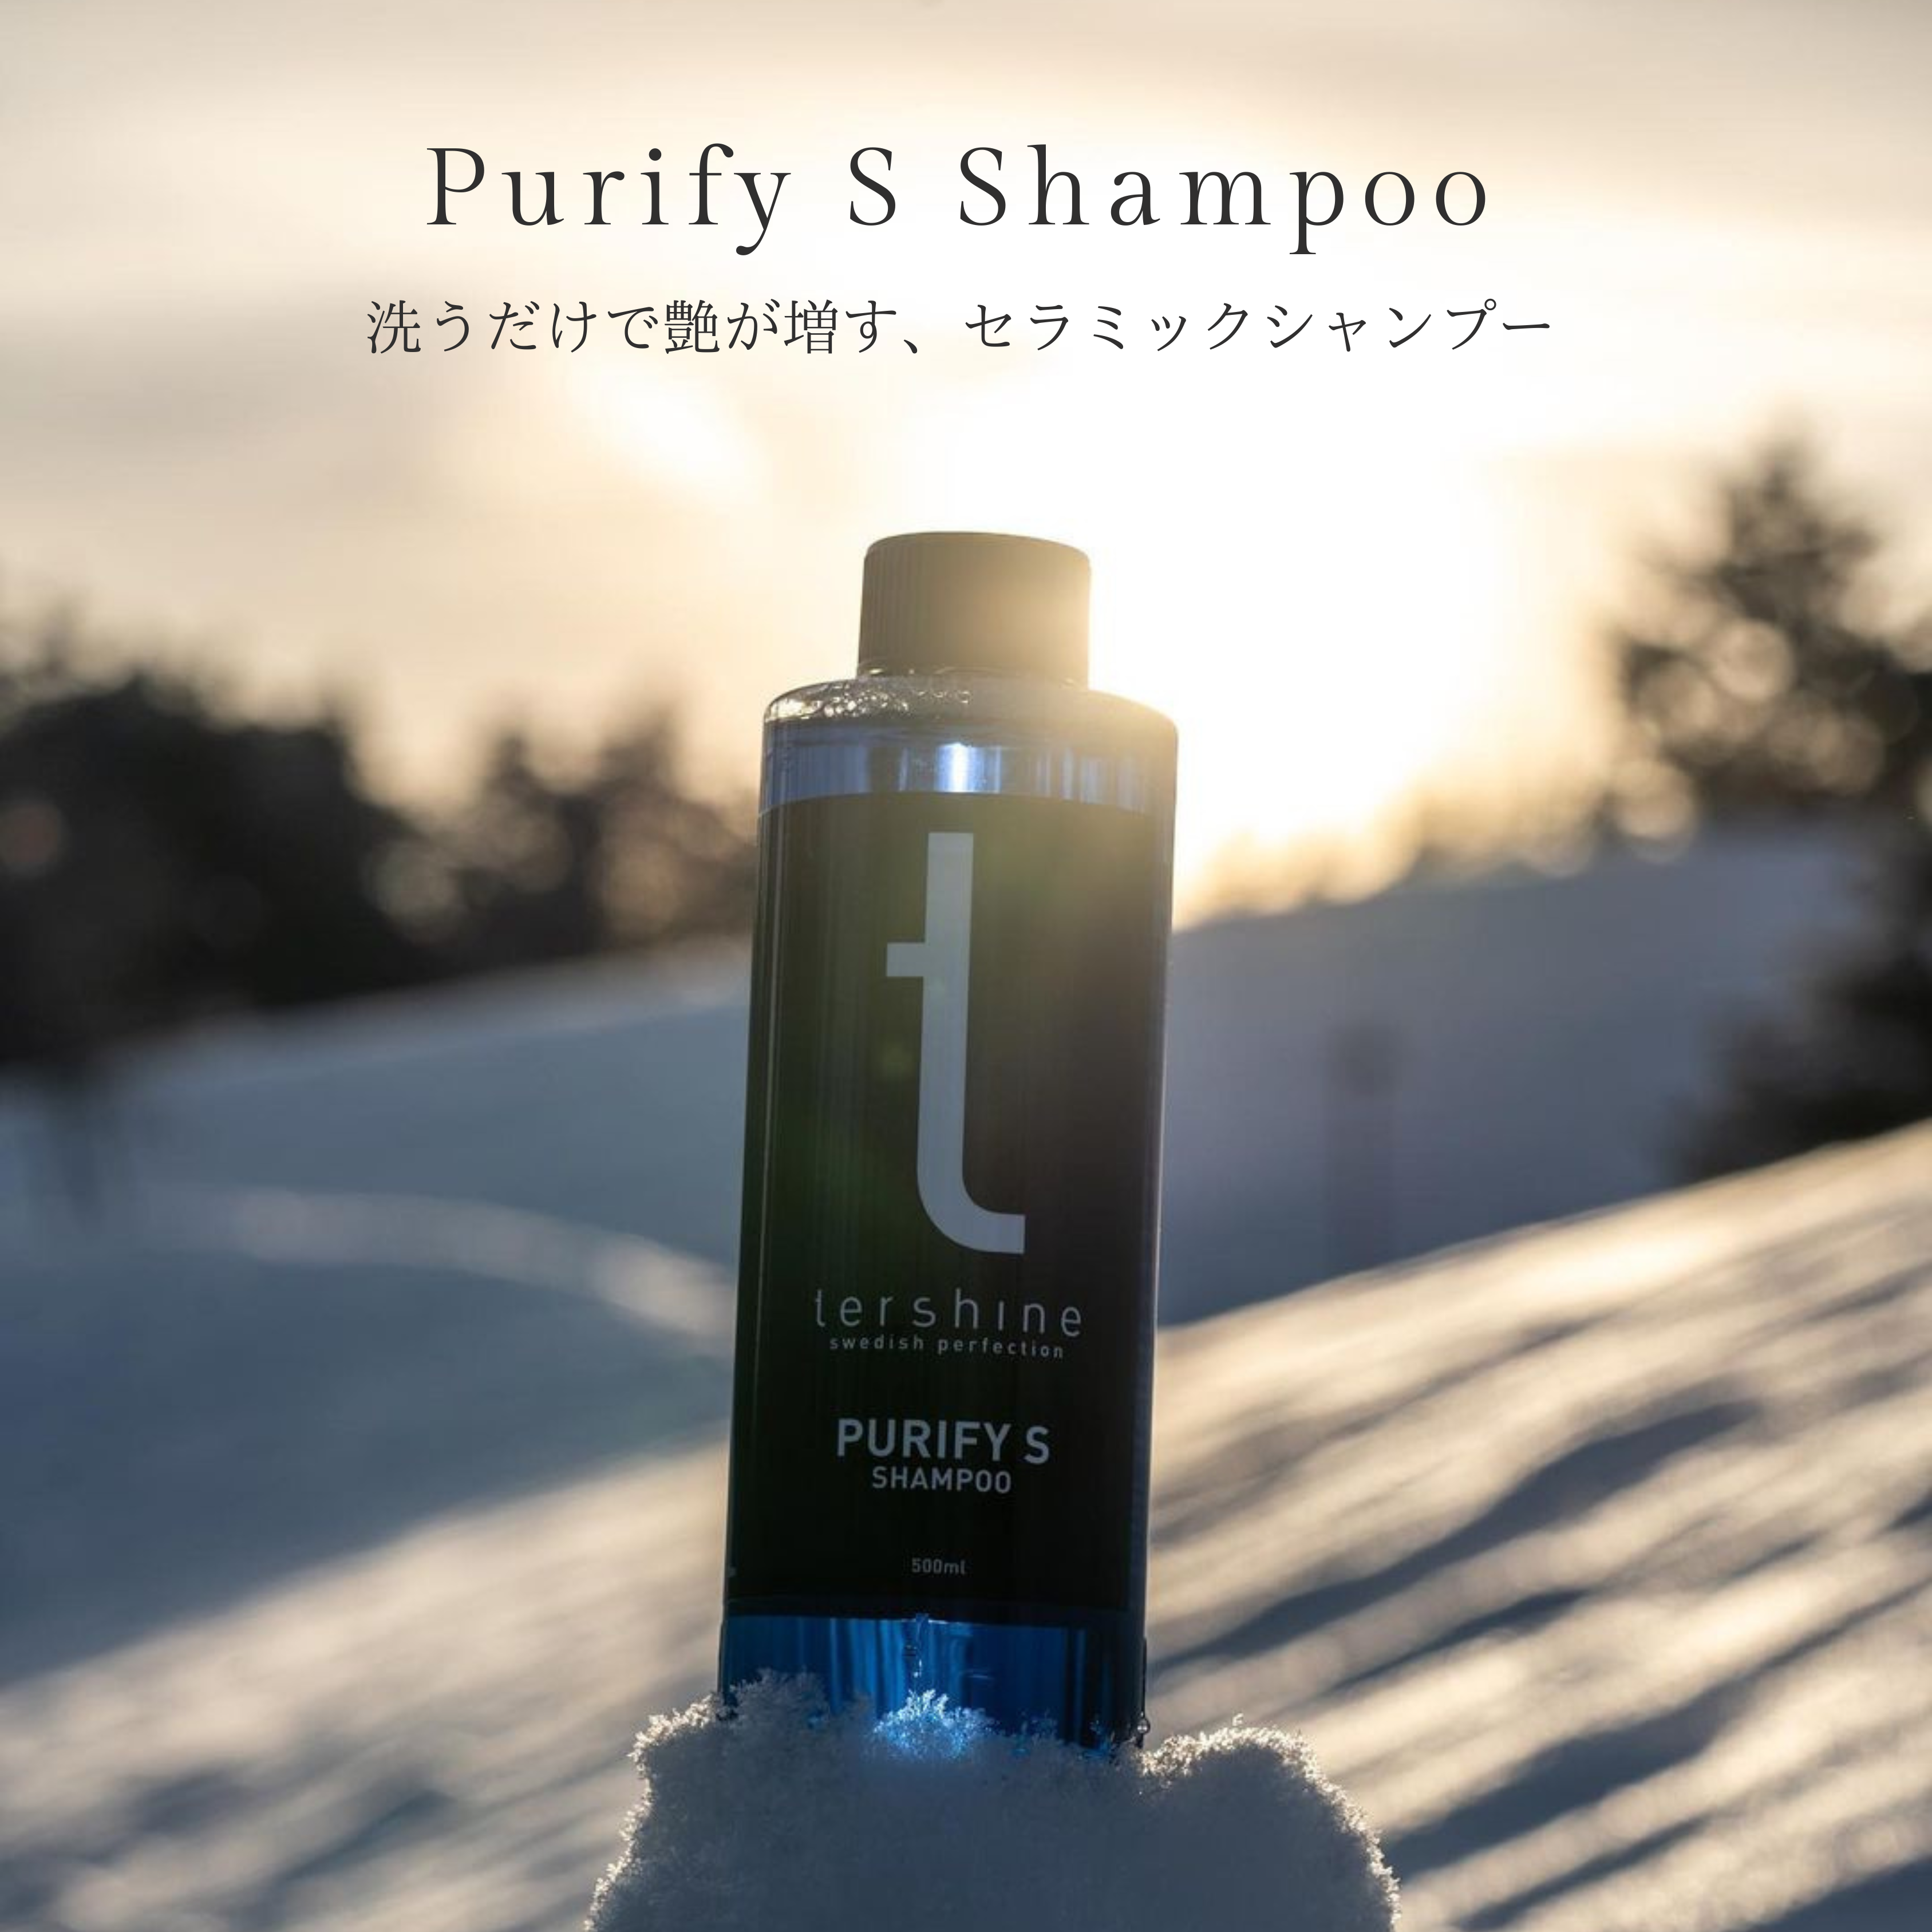 【決済時10%OFF 特別割引】Purify S Shampoo | セラミックシャンプー